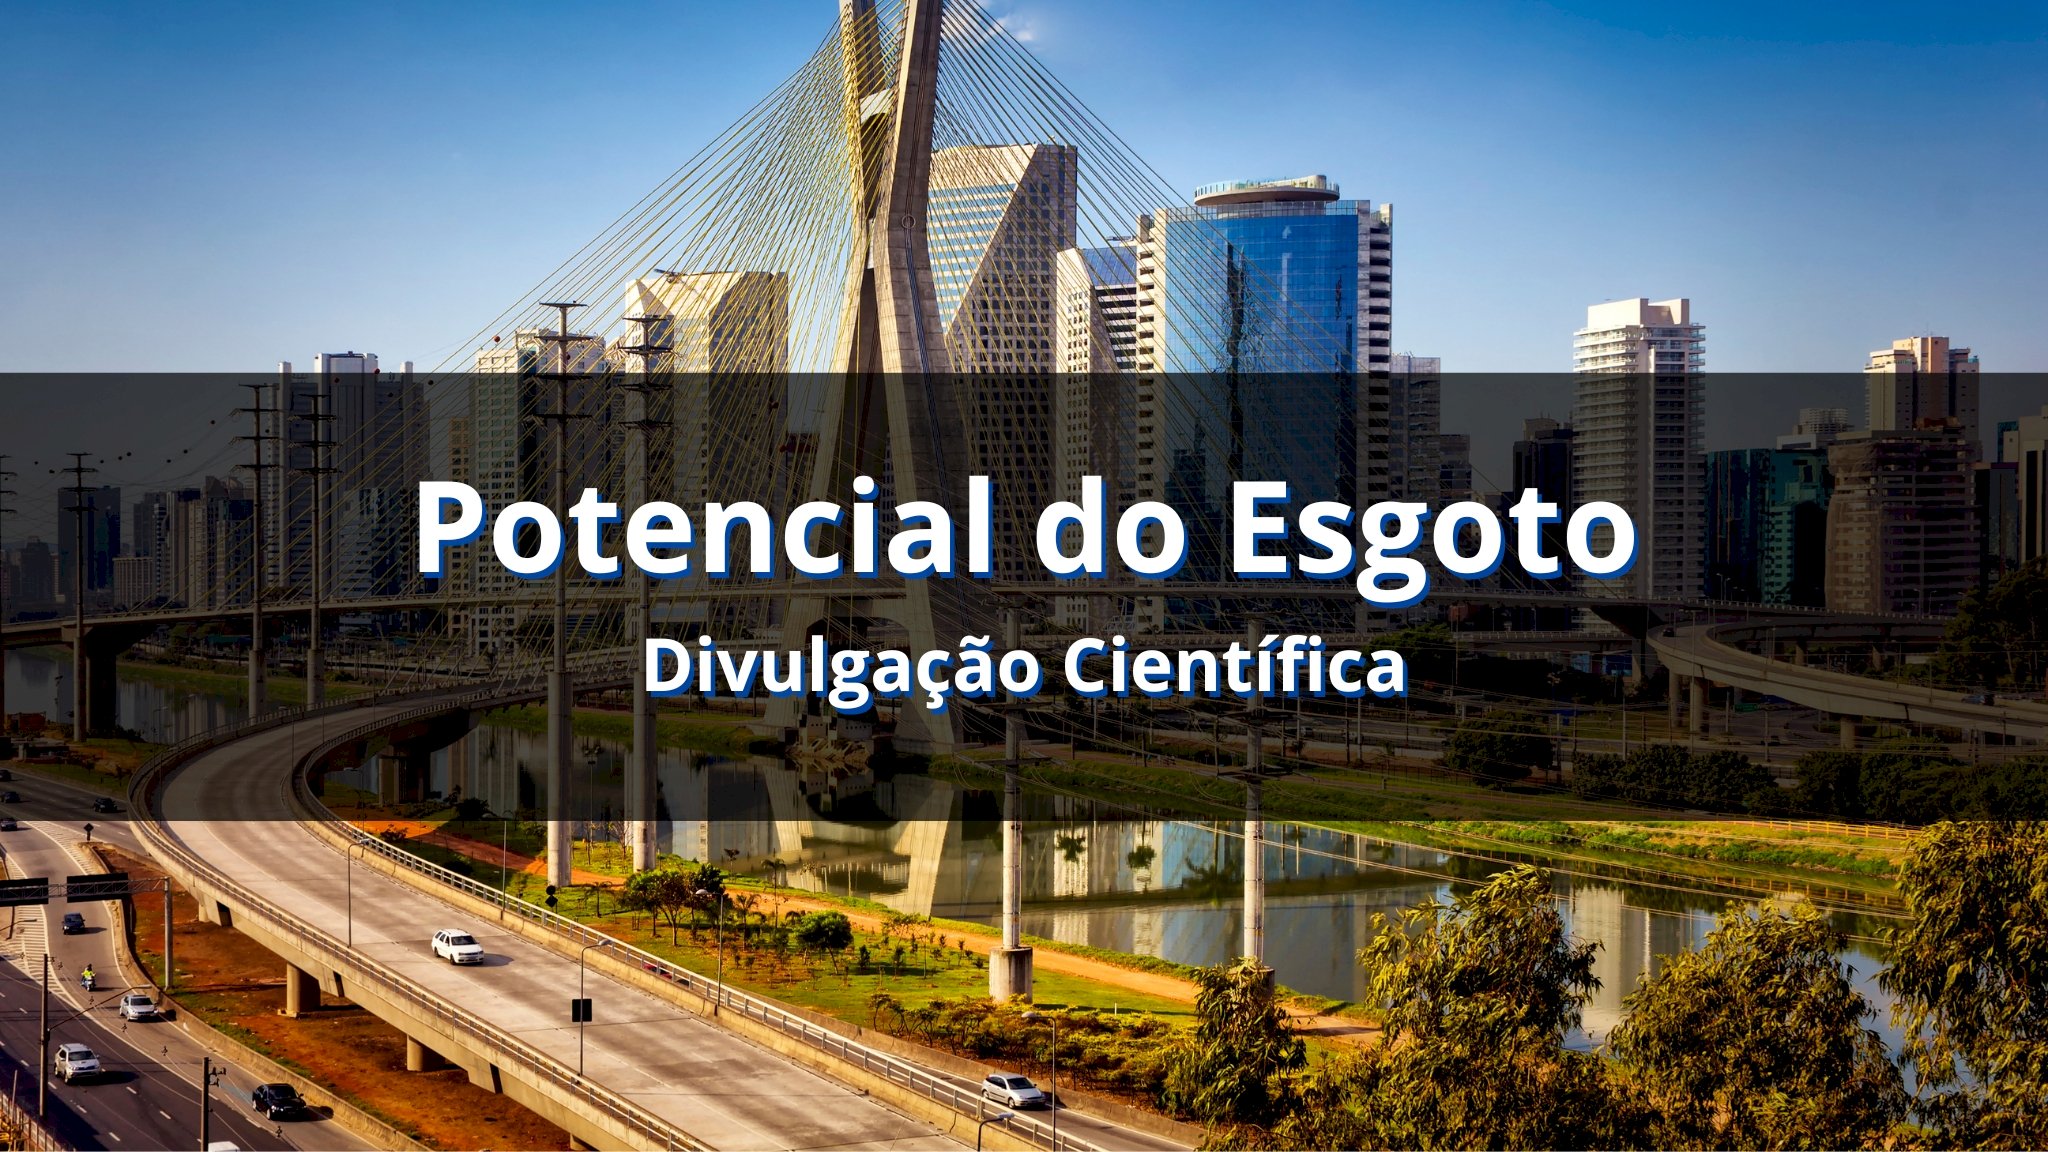 Esgoto em Biometano: o potencial de São Paulo